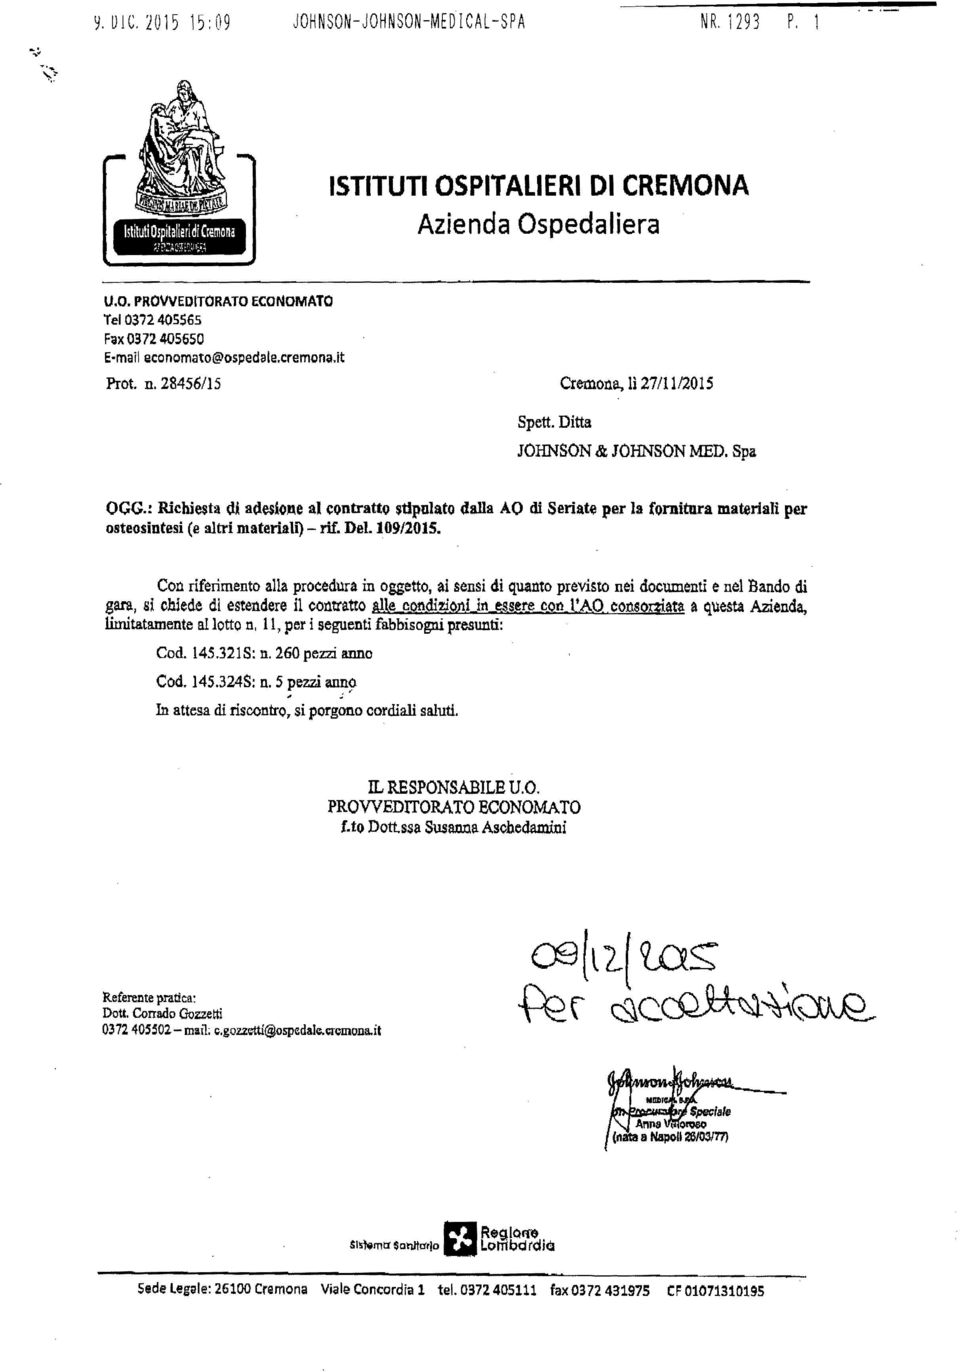 ! Richiesta di adesione al contratto stipulato dalla AO di Seriate per la fornitura materiali per osteosintesi (e altri materiali) - rif. Del.109/201S.